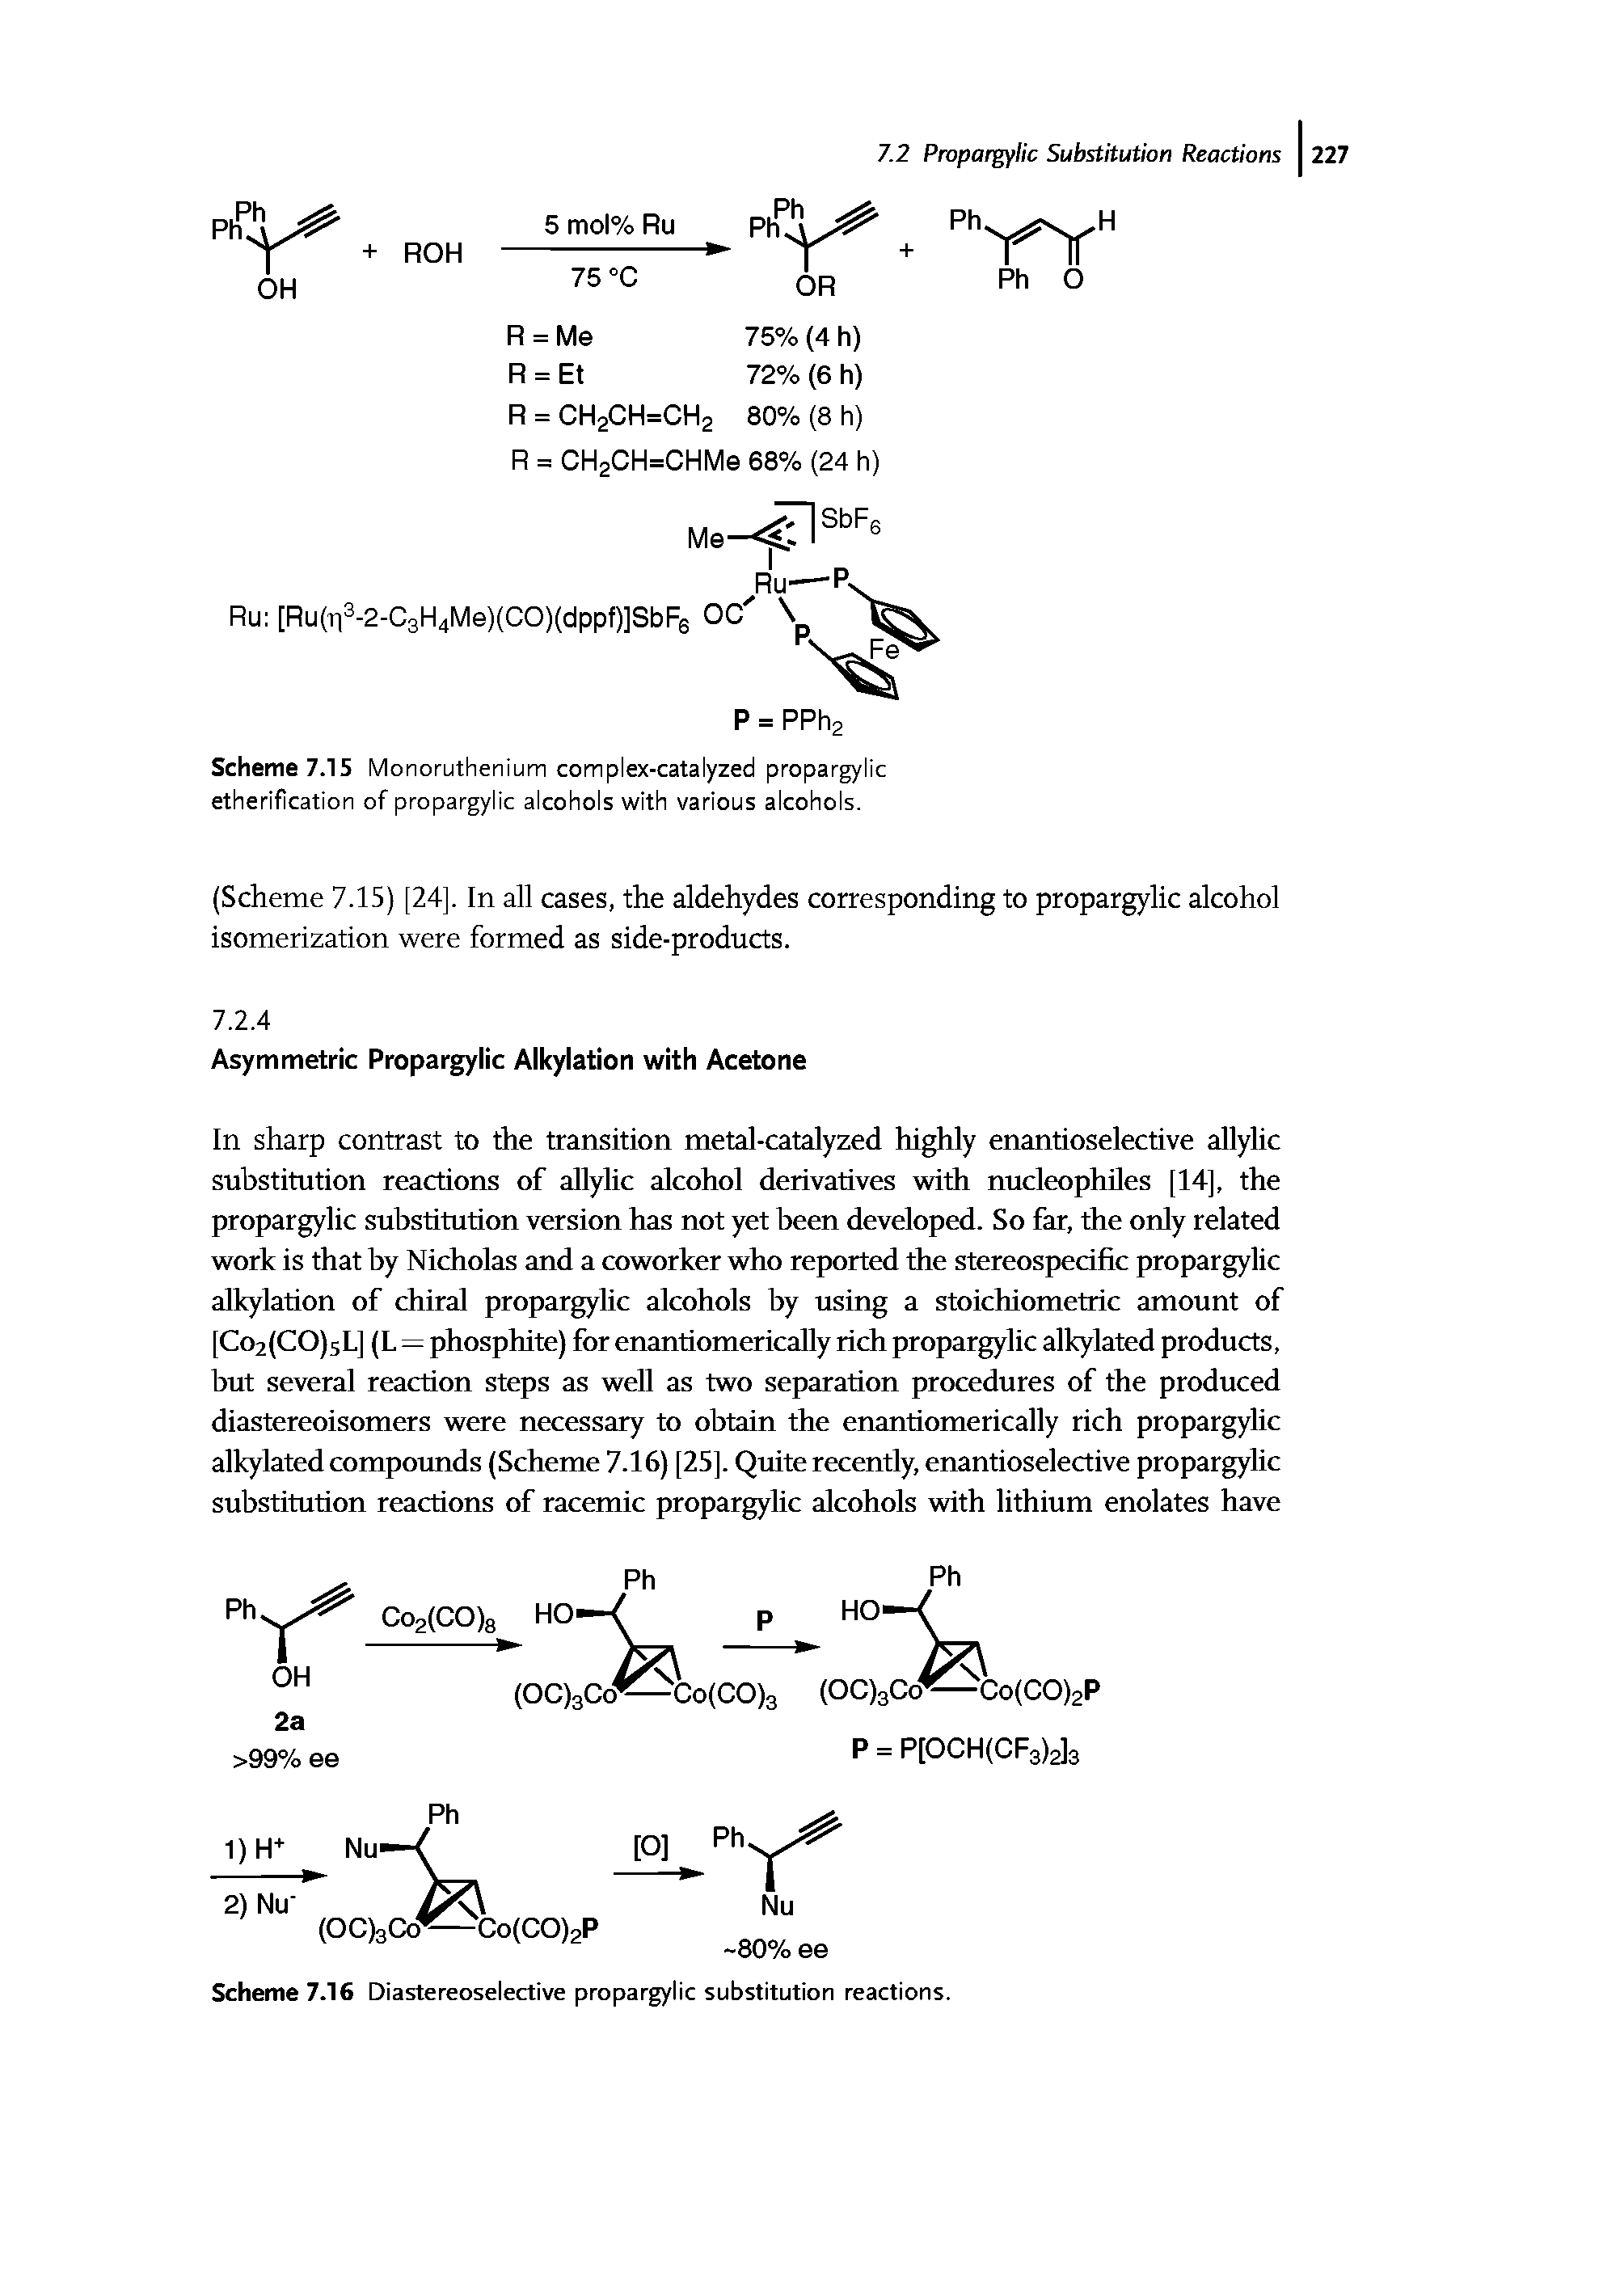 Scheme 7.15 Monoruthenium complex-catalyzed propargylic etherification of propargylic alcohols with various alcohols.